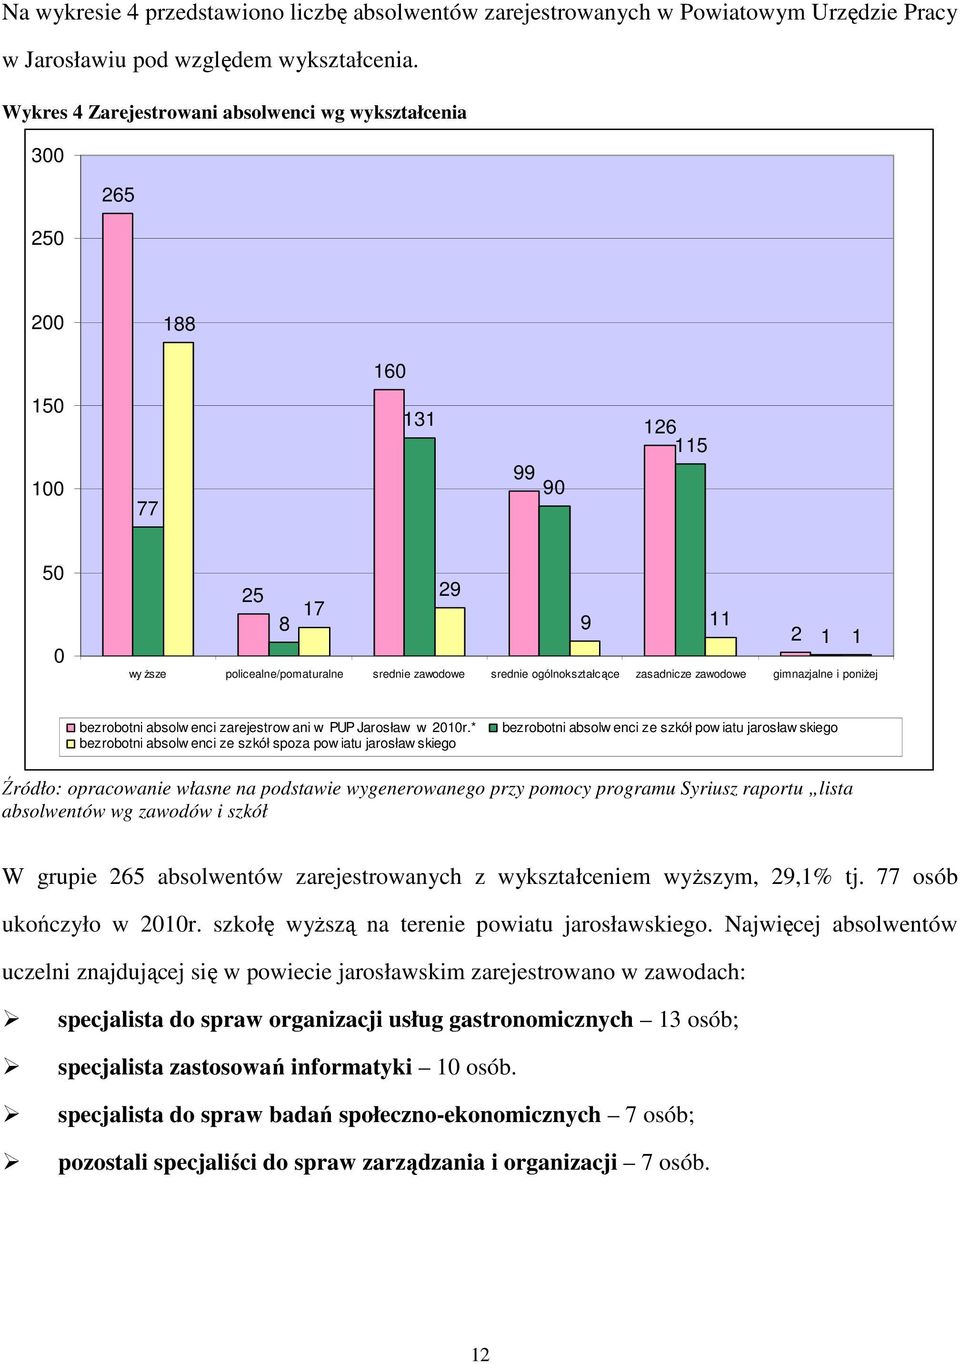 ogólnokształcące zasadnicze zawodowe gimnazjalne i poniżej bezrobotni absolw enci zarejestrow ani w PUP Jarosław w 2010r.